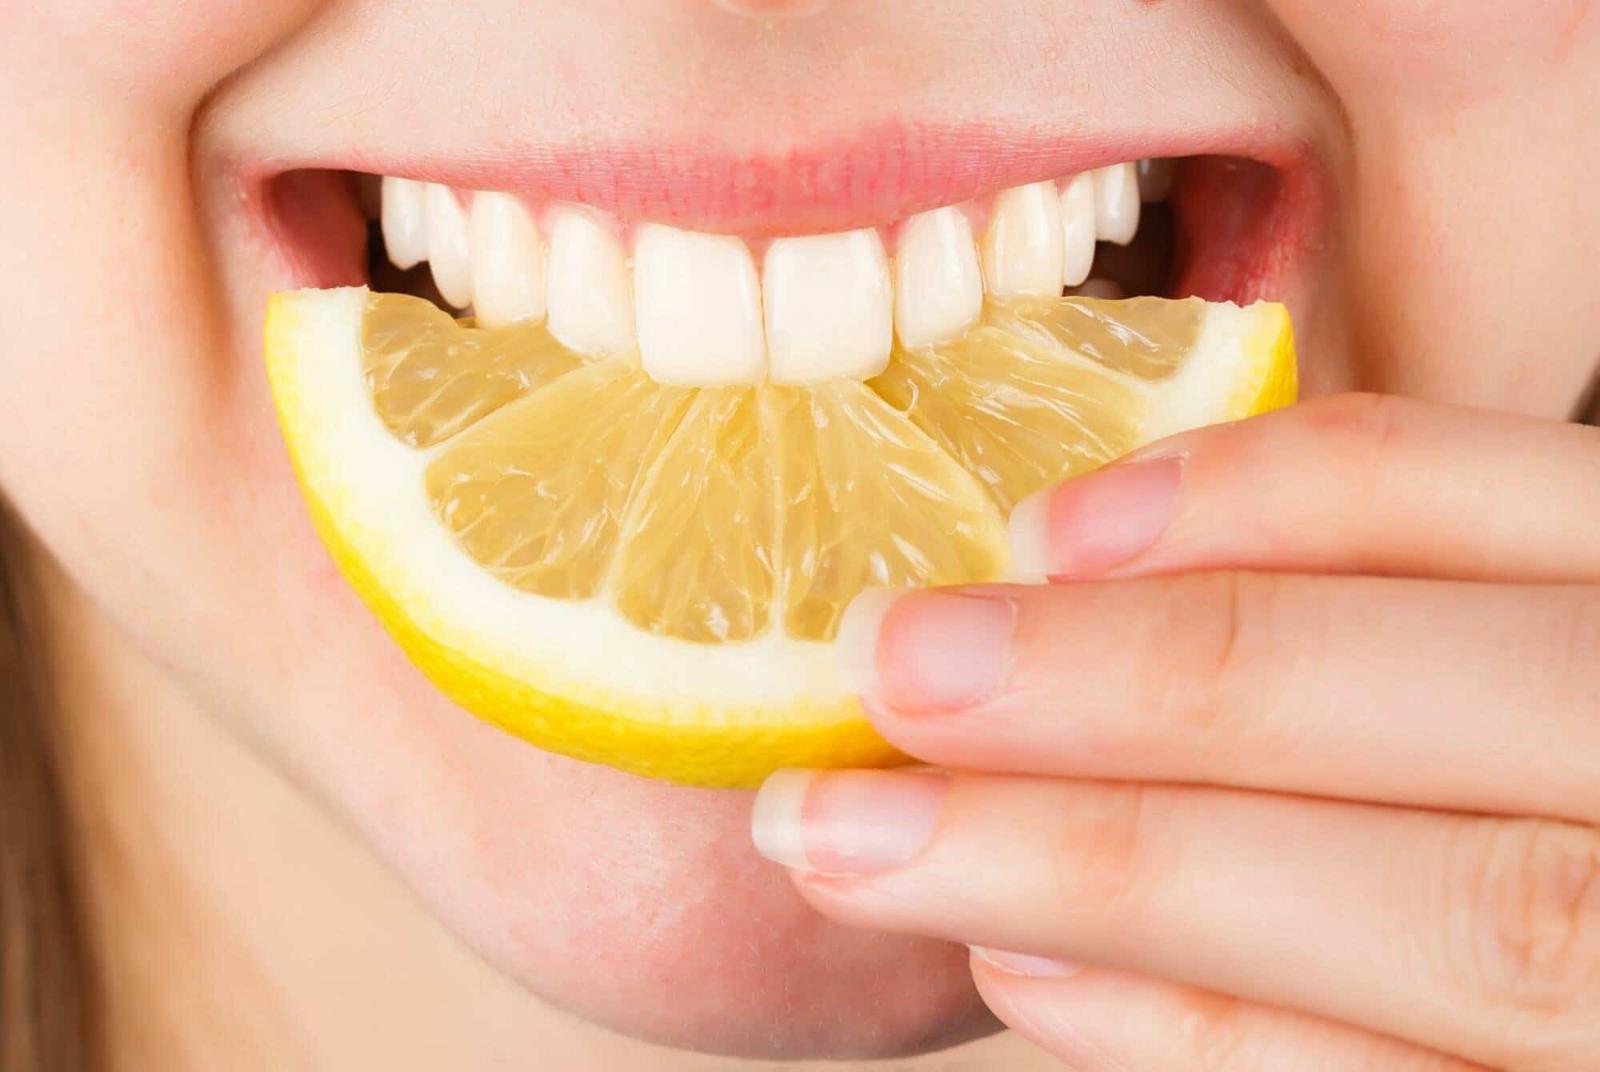 Лимонная кислота обладает небольшим осветляющим эффектом, но при этом может вызвать повреждения слизистой, десен, ослабить зубную эмаль